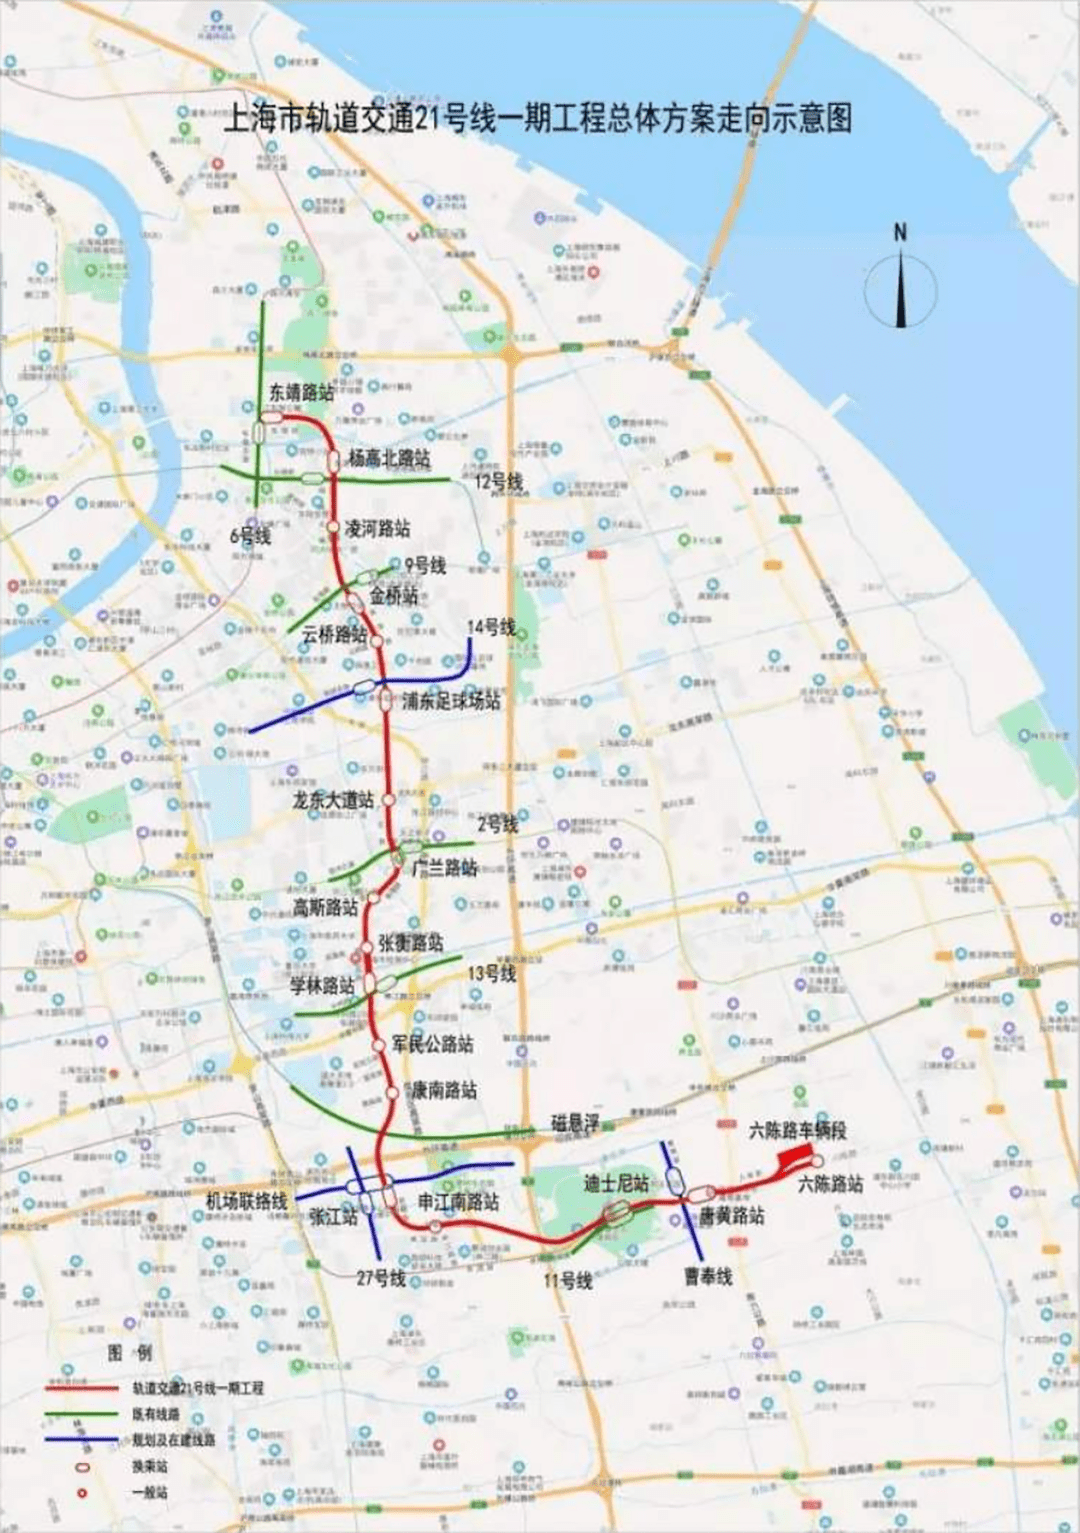 23号线地铁线路图上海图片